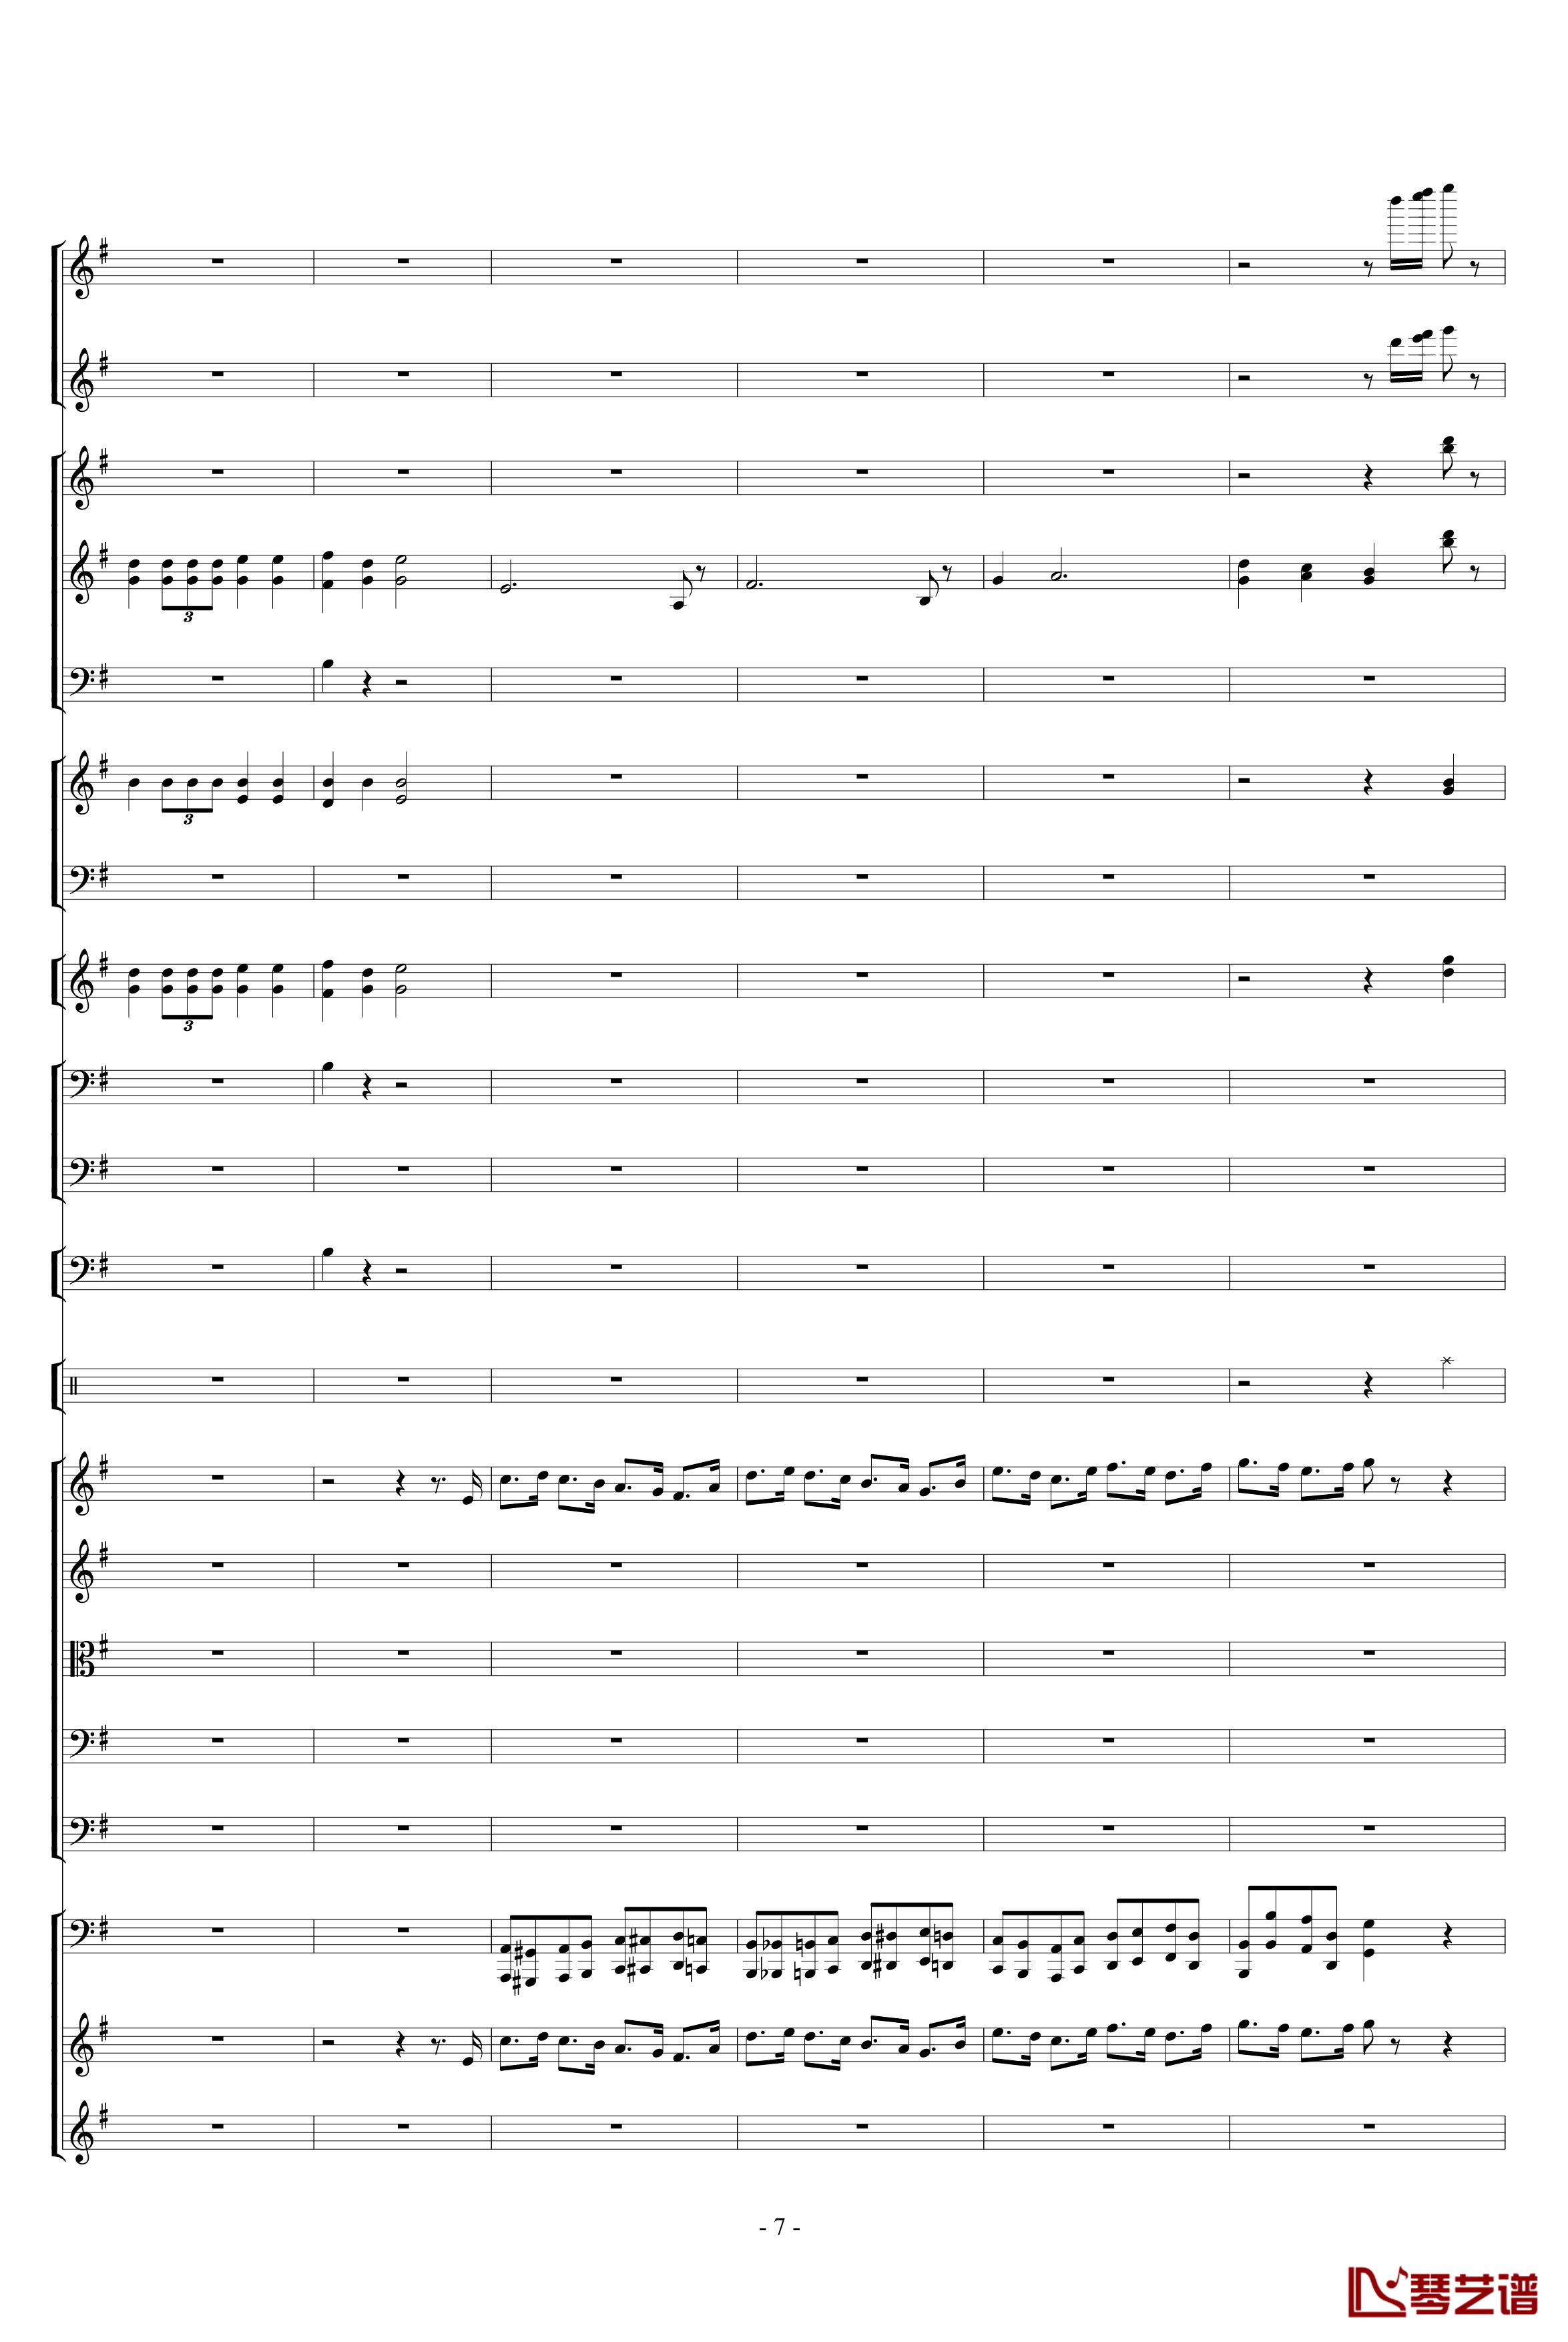 胡桃夹子组曲之进行曲钢琴谱-柴科夫斯基-Peter Ilyich Tchaikovsky7